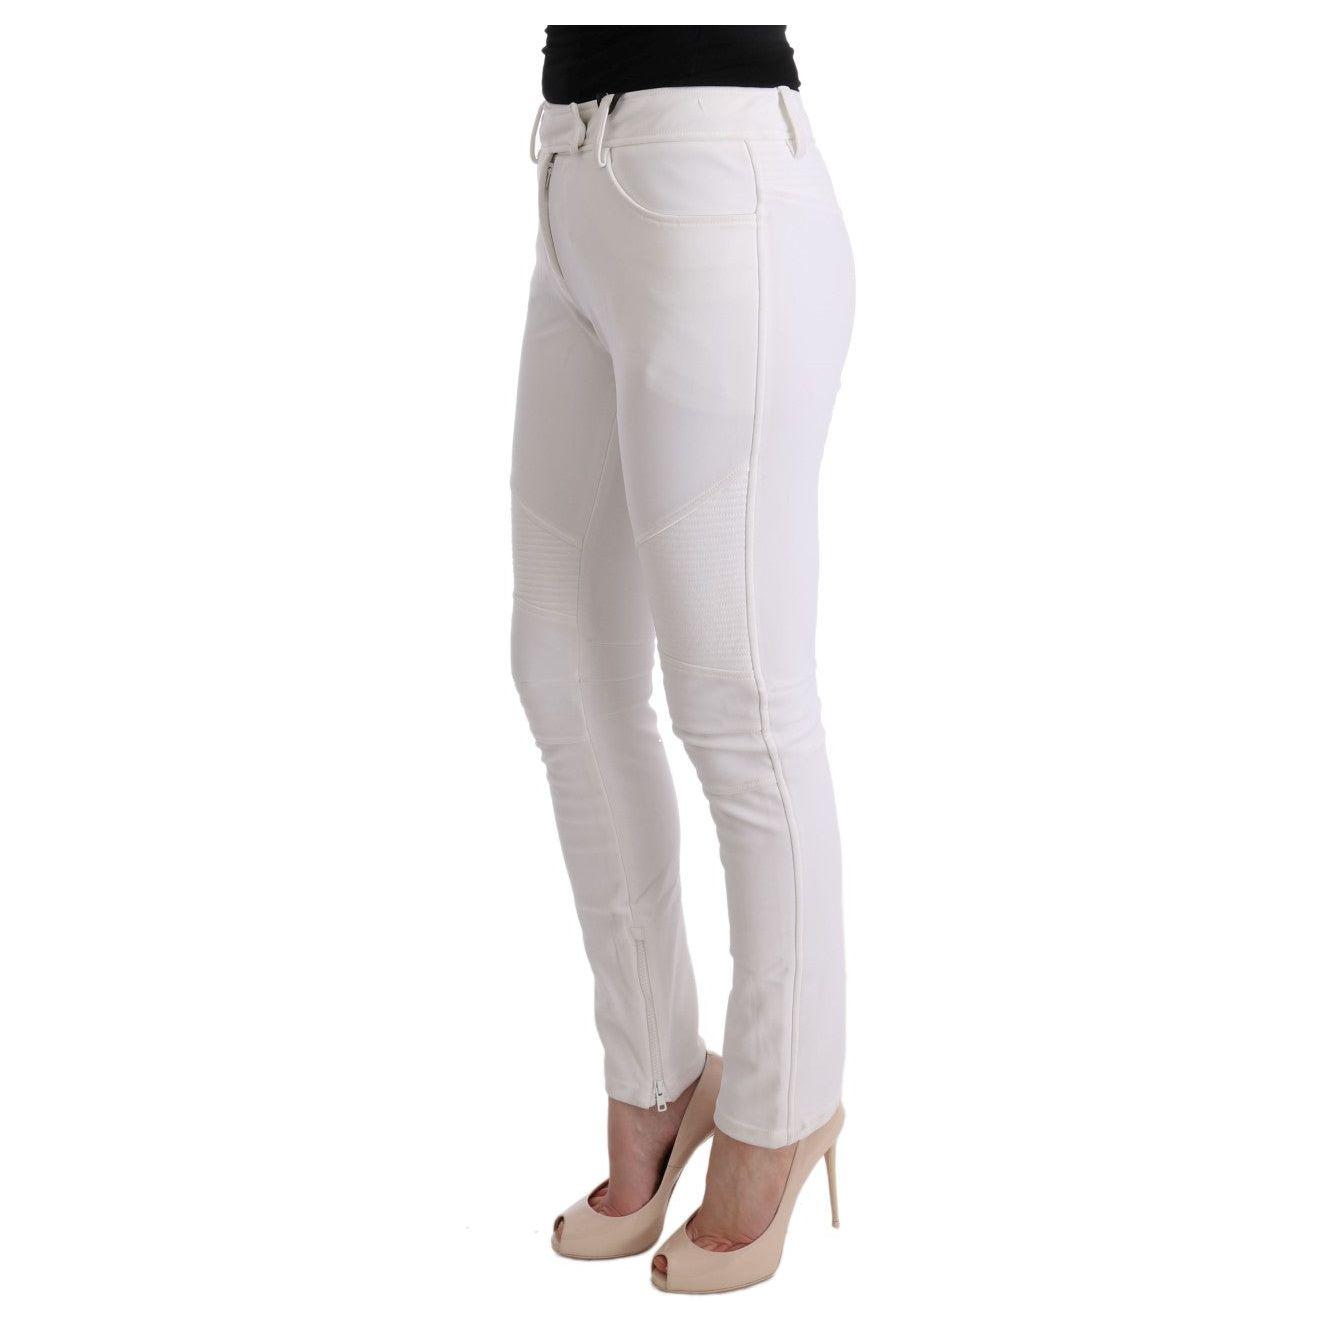 Ermanno Scervino Chic White Slim Fit Cotton Trousers white-cotton-slim-fit-casual-pants-2 449222-white-cotton-slim-fit-casual-pants-3-1.jpg